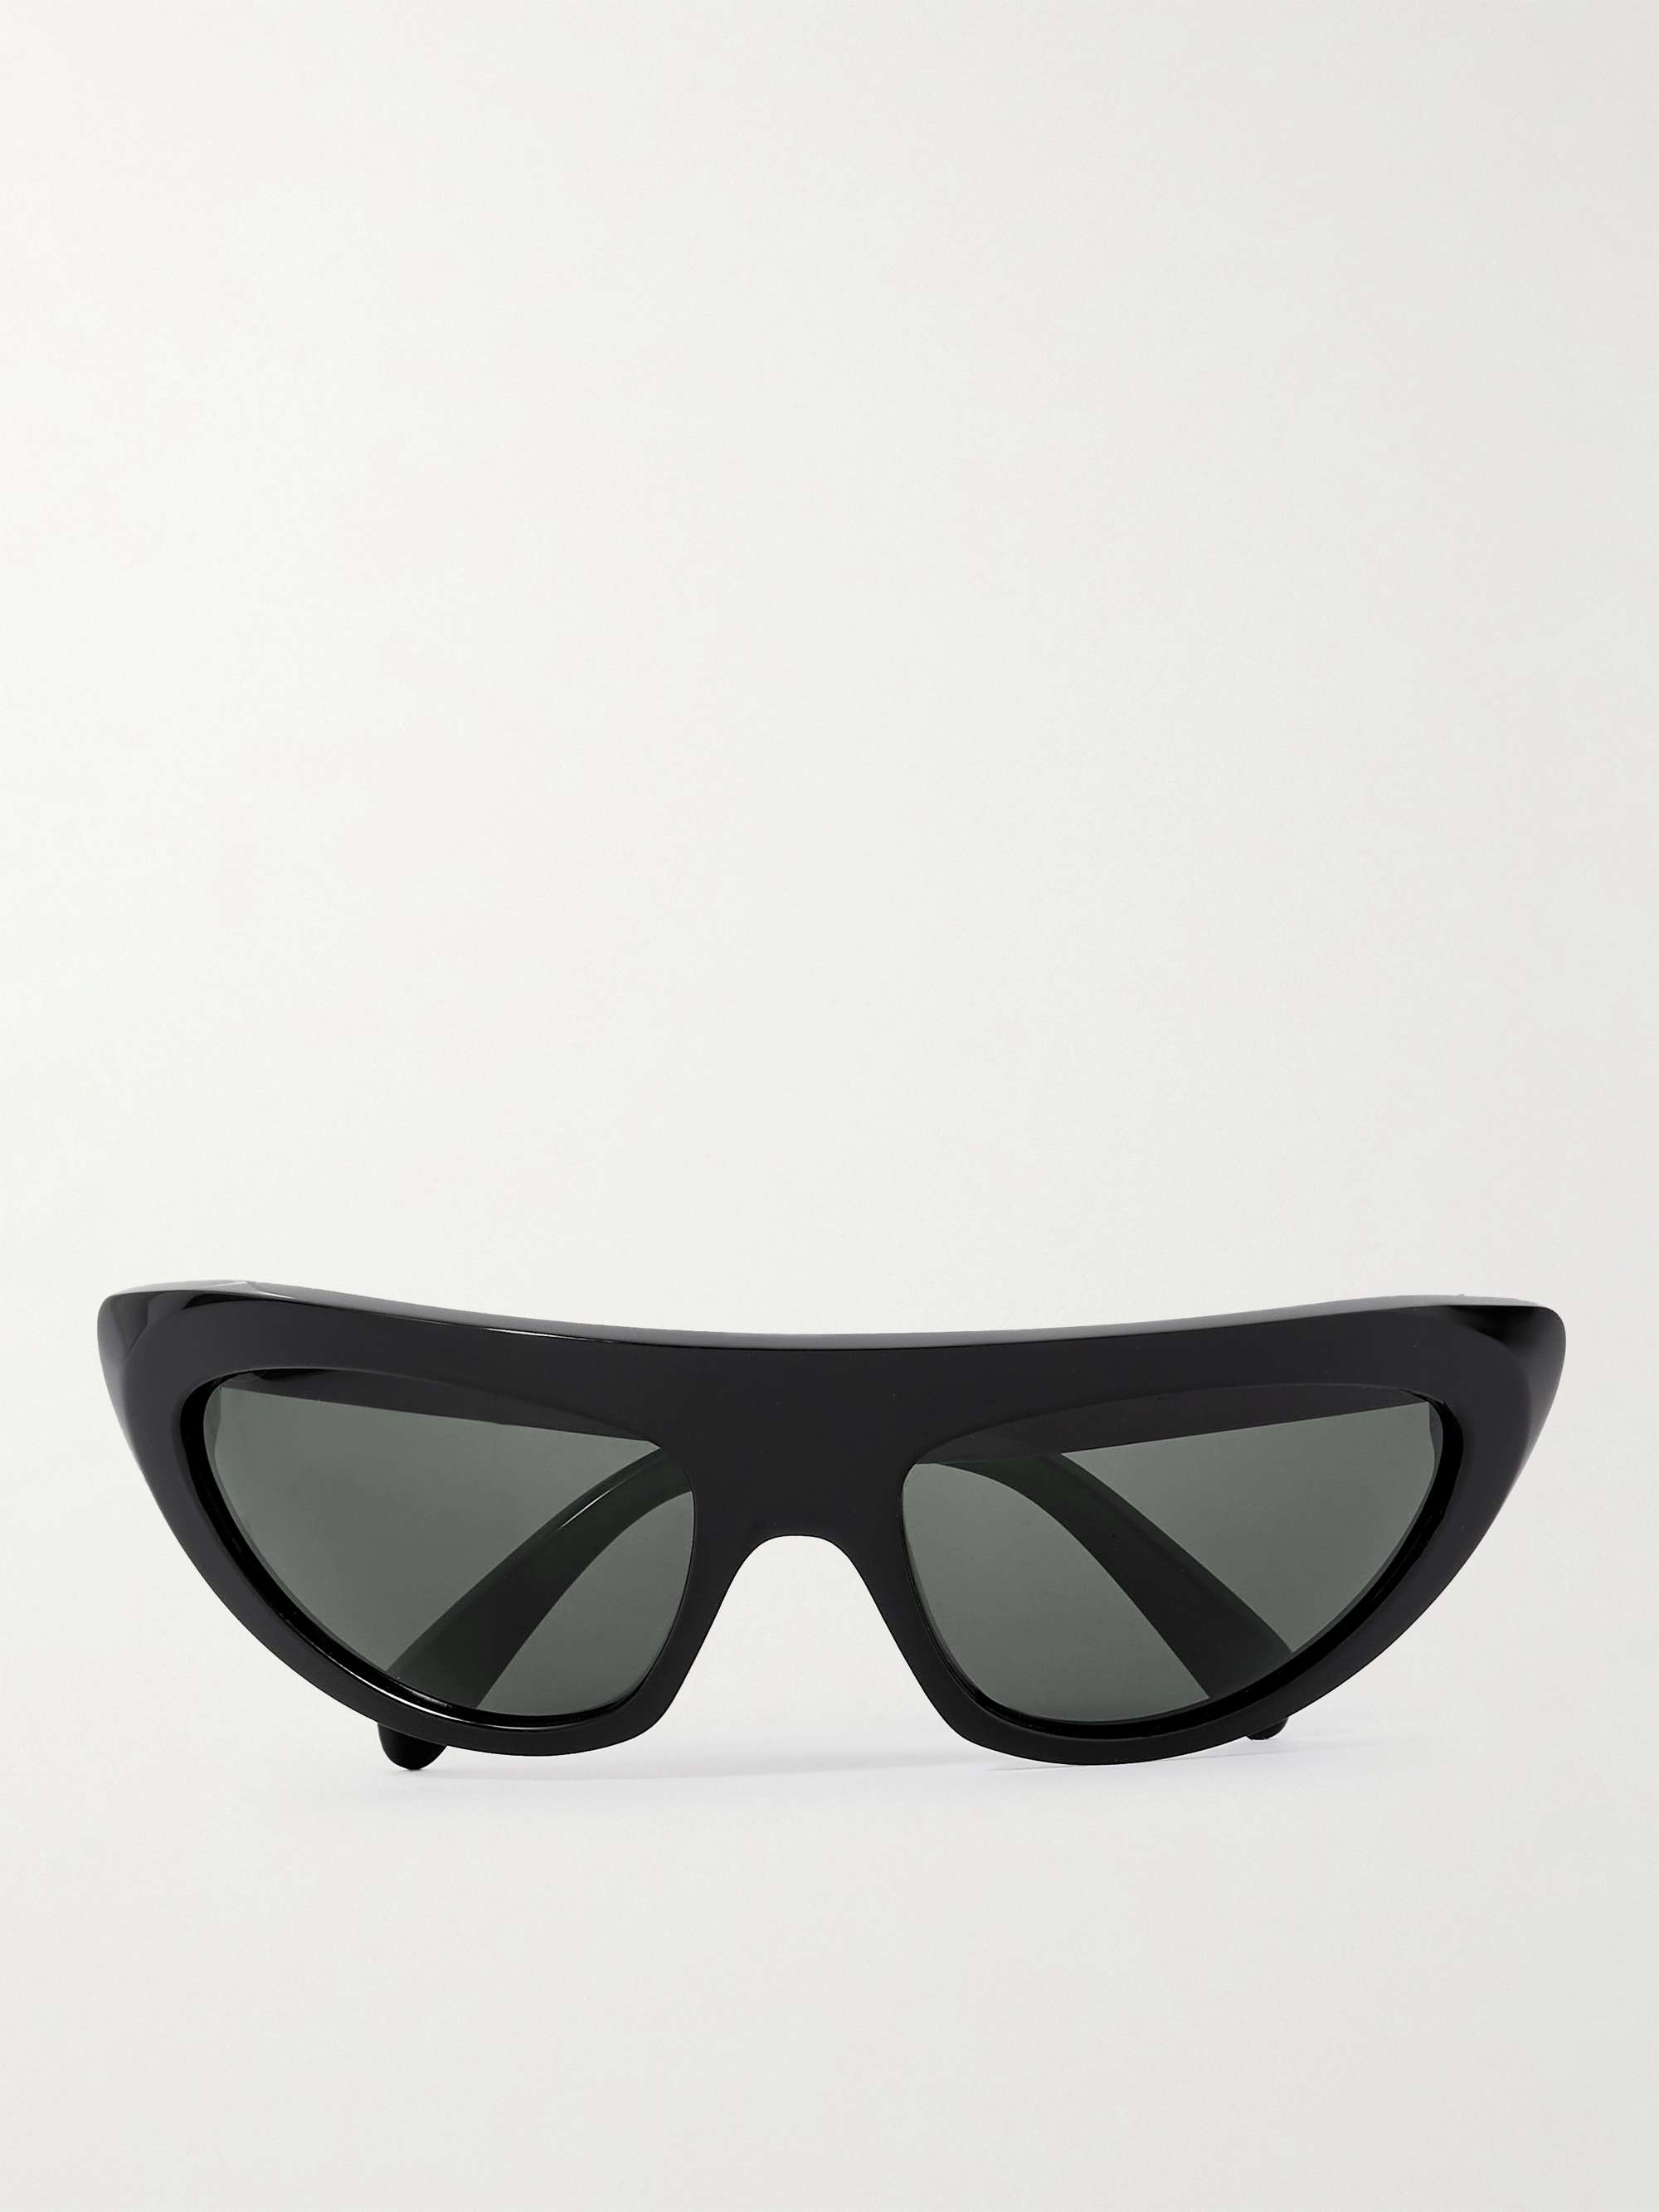 Celine Homme Men's D-Frame Acetate Sunglasses